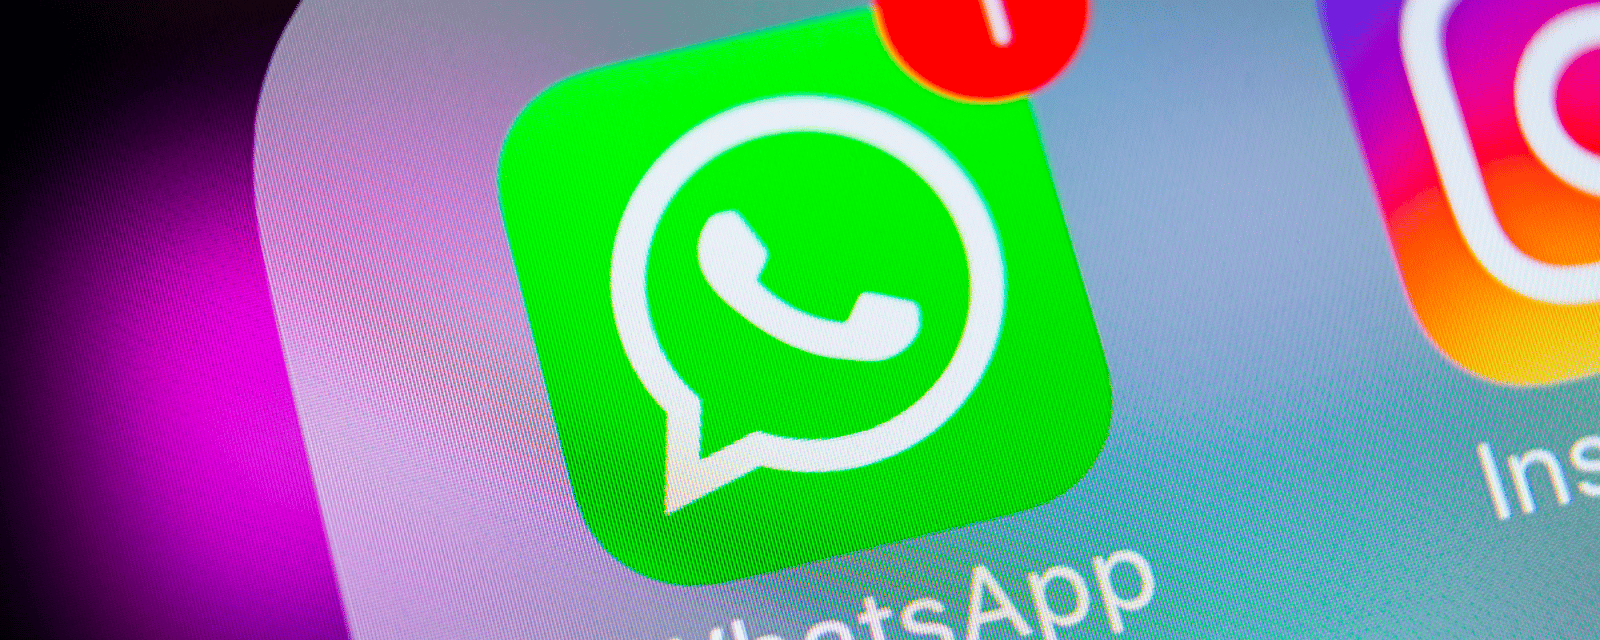 WhatsApp lance une nouvelle fonctionnalité qui pourrait changer la vie de beaucoup de monde